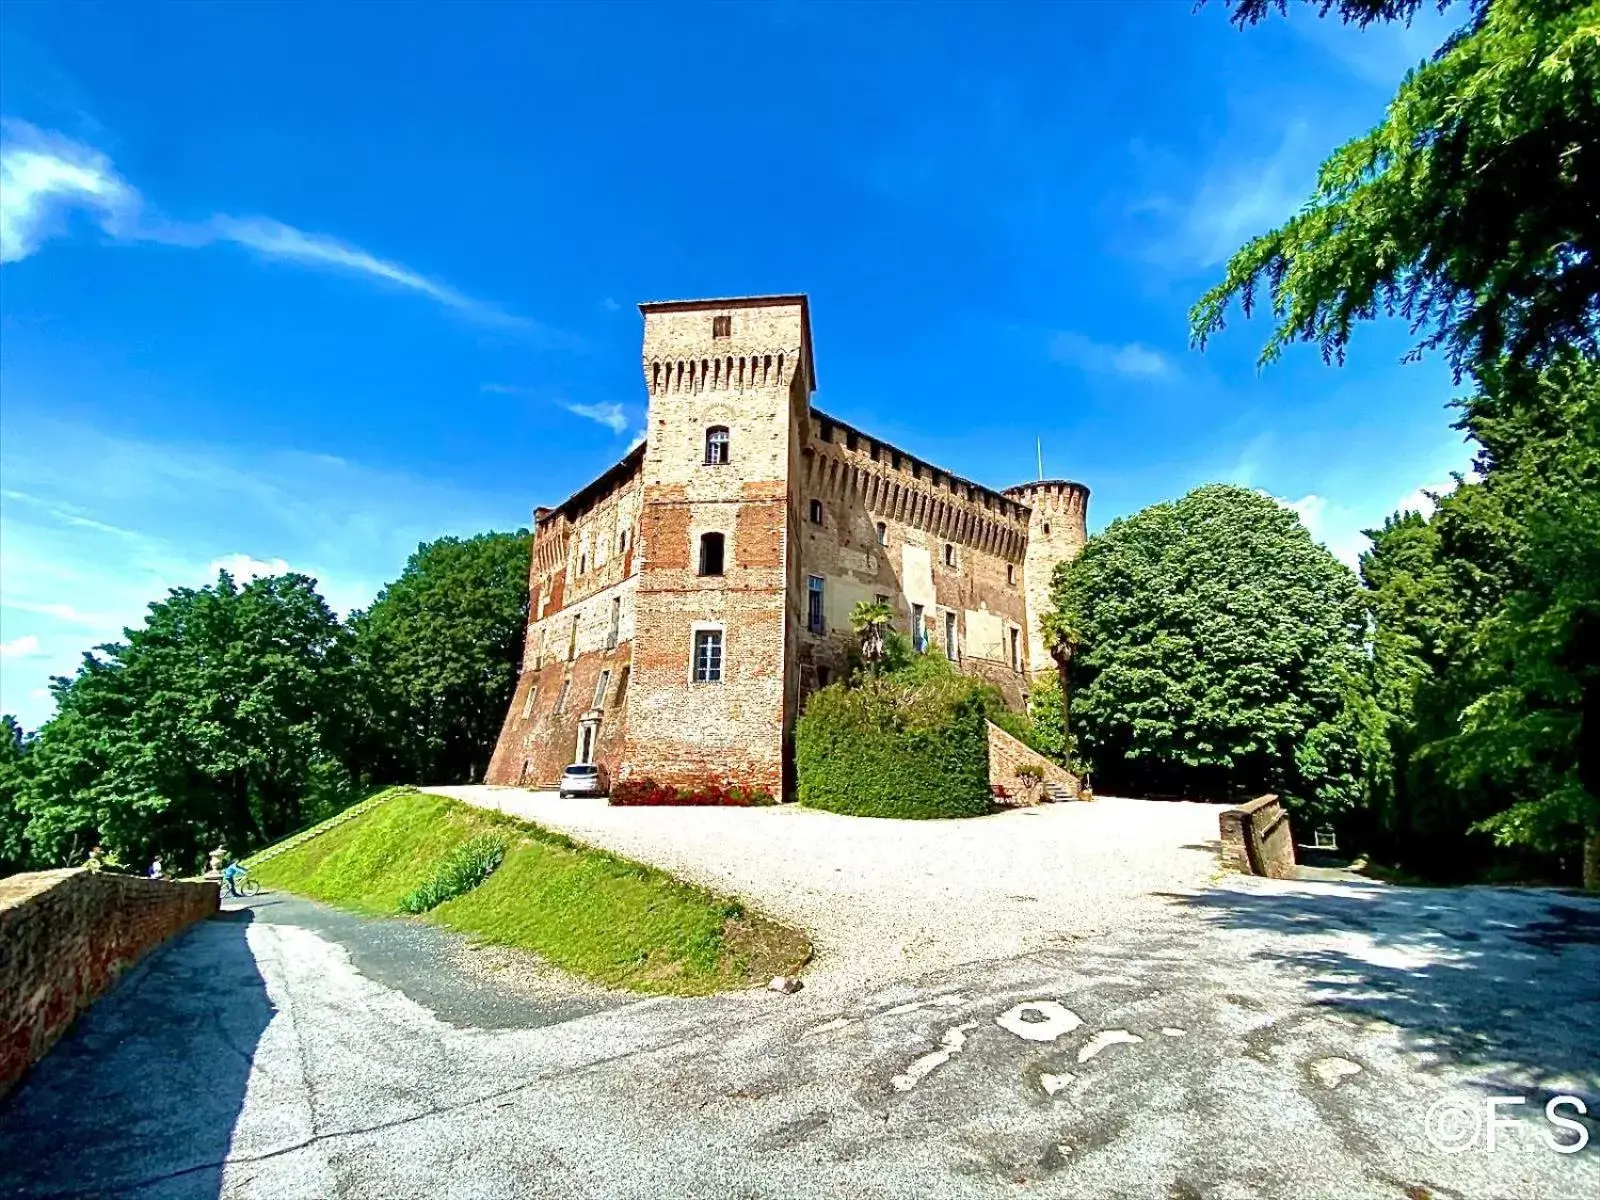 Nearby landmark, Property Building in Foresteria Ristorante Conti Roero